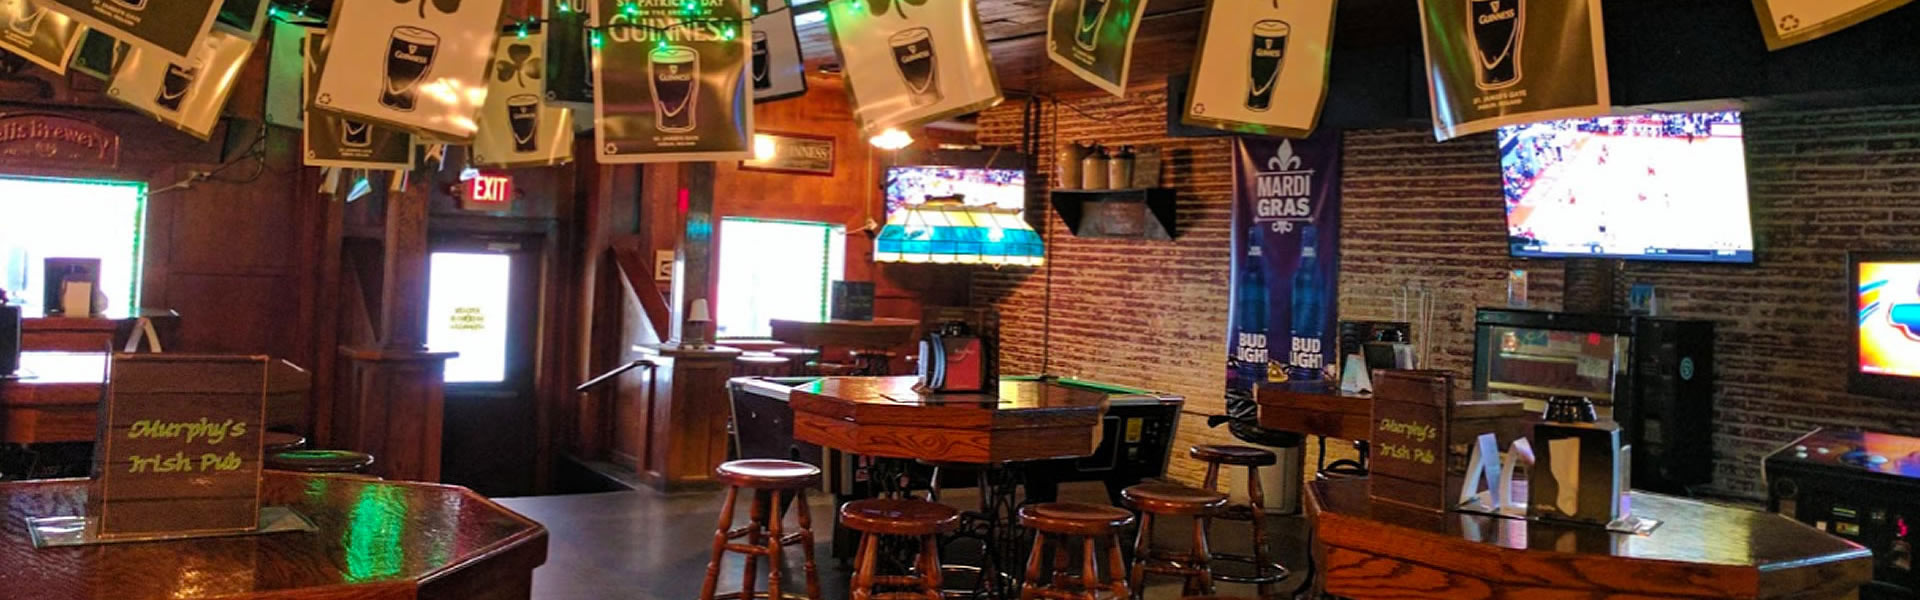 Murphy's Irish Pub, Galveston TX